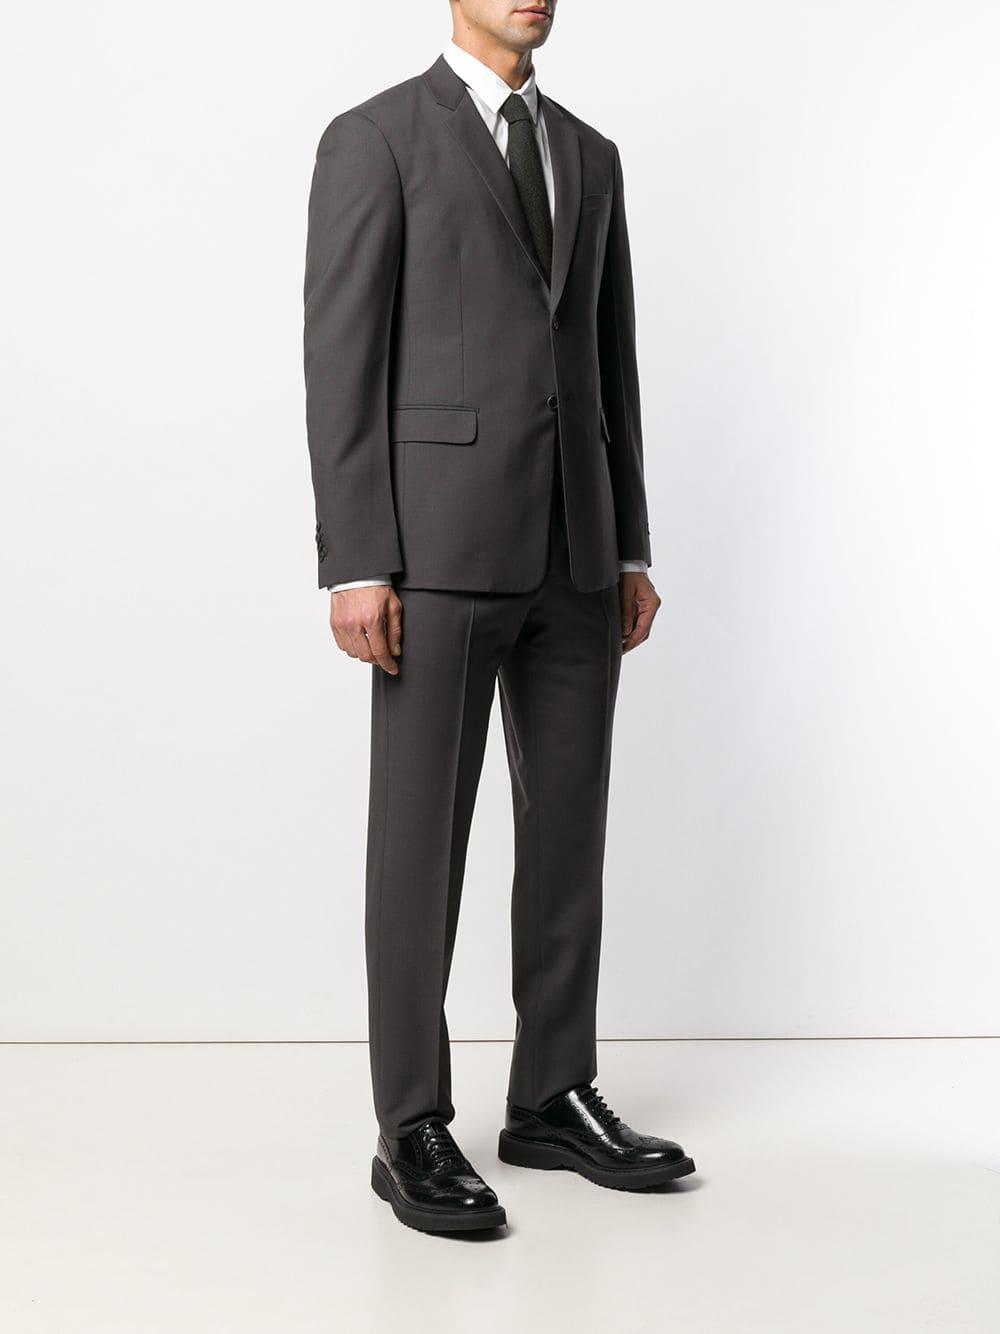 Prada Wool Slim-fit Suit in Black for Men - Lyst